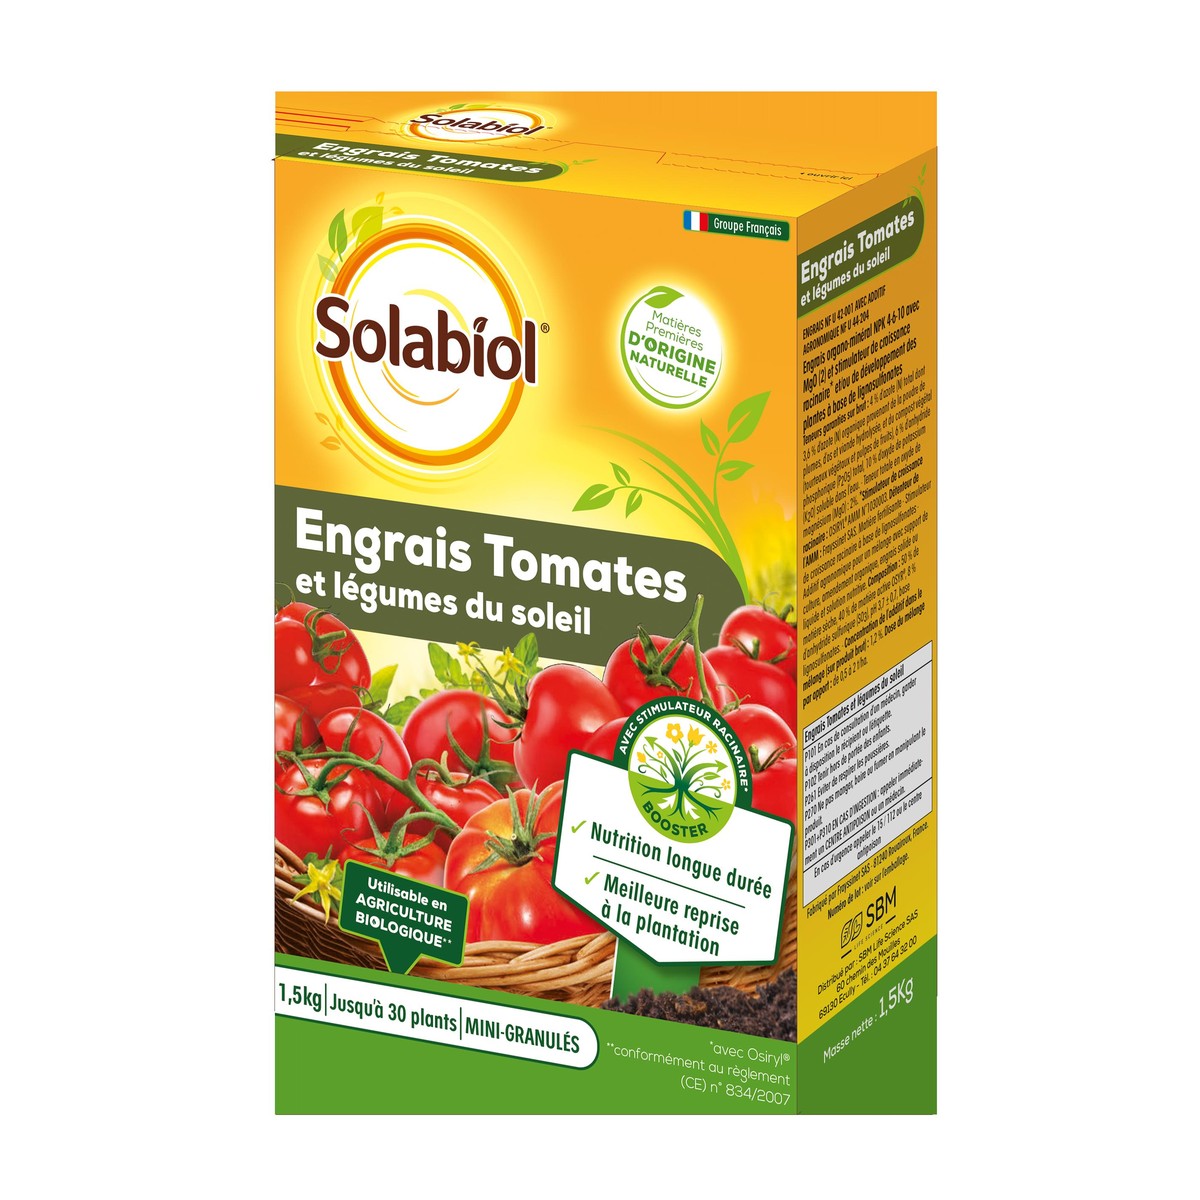   Engrais Tomates Et Legumes Fruits 1,5Kg  